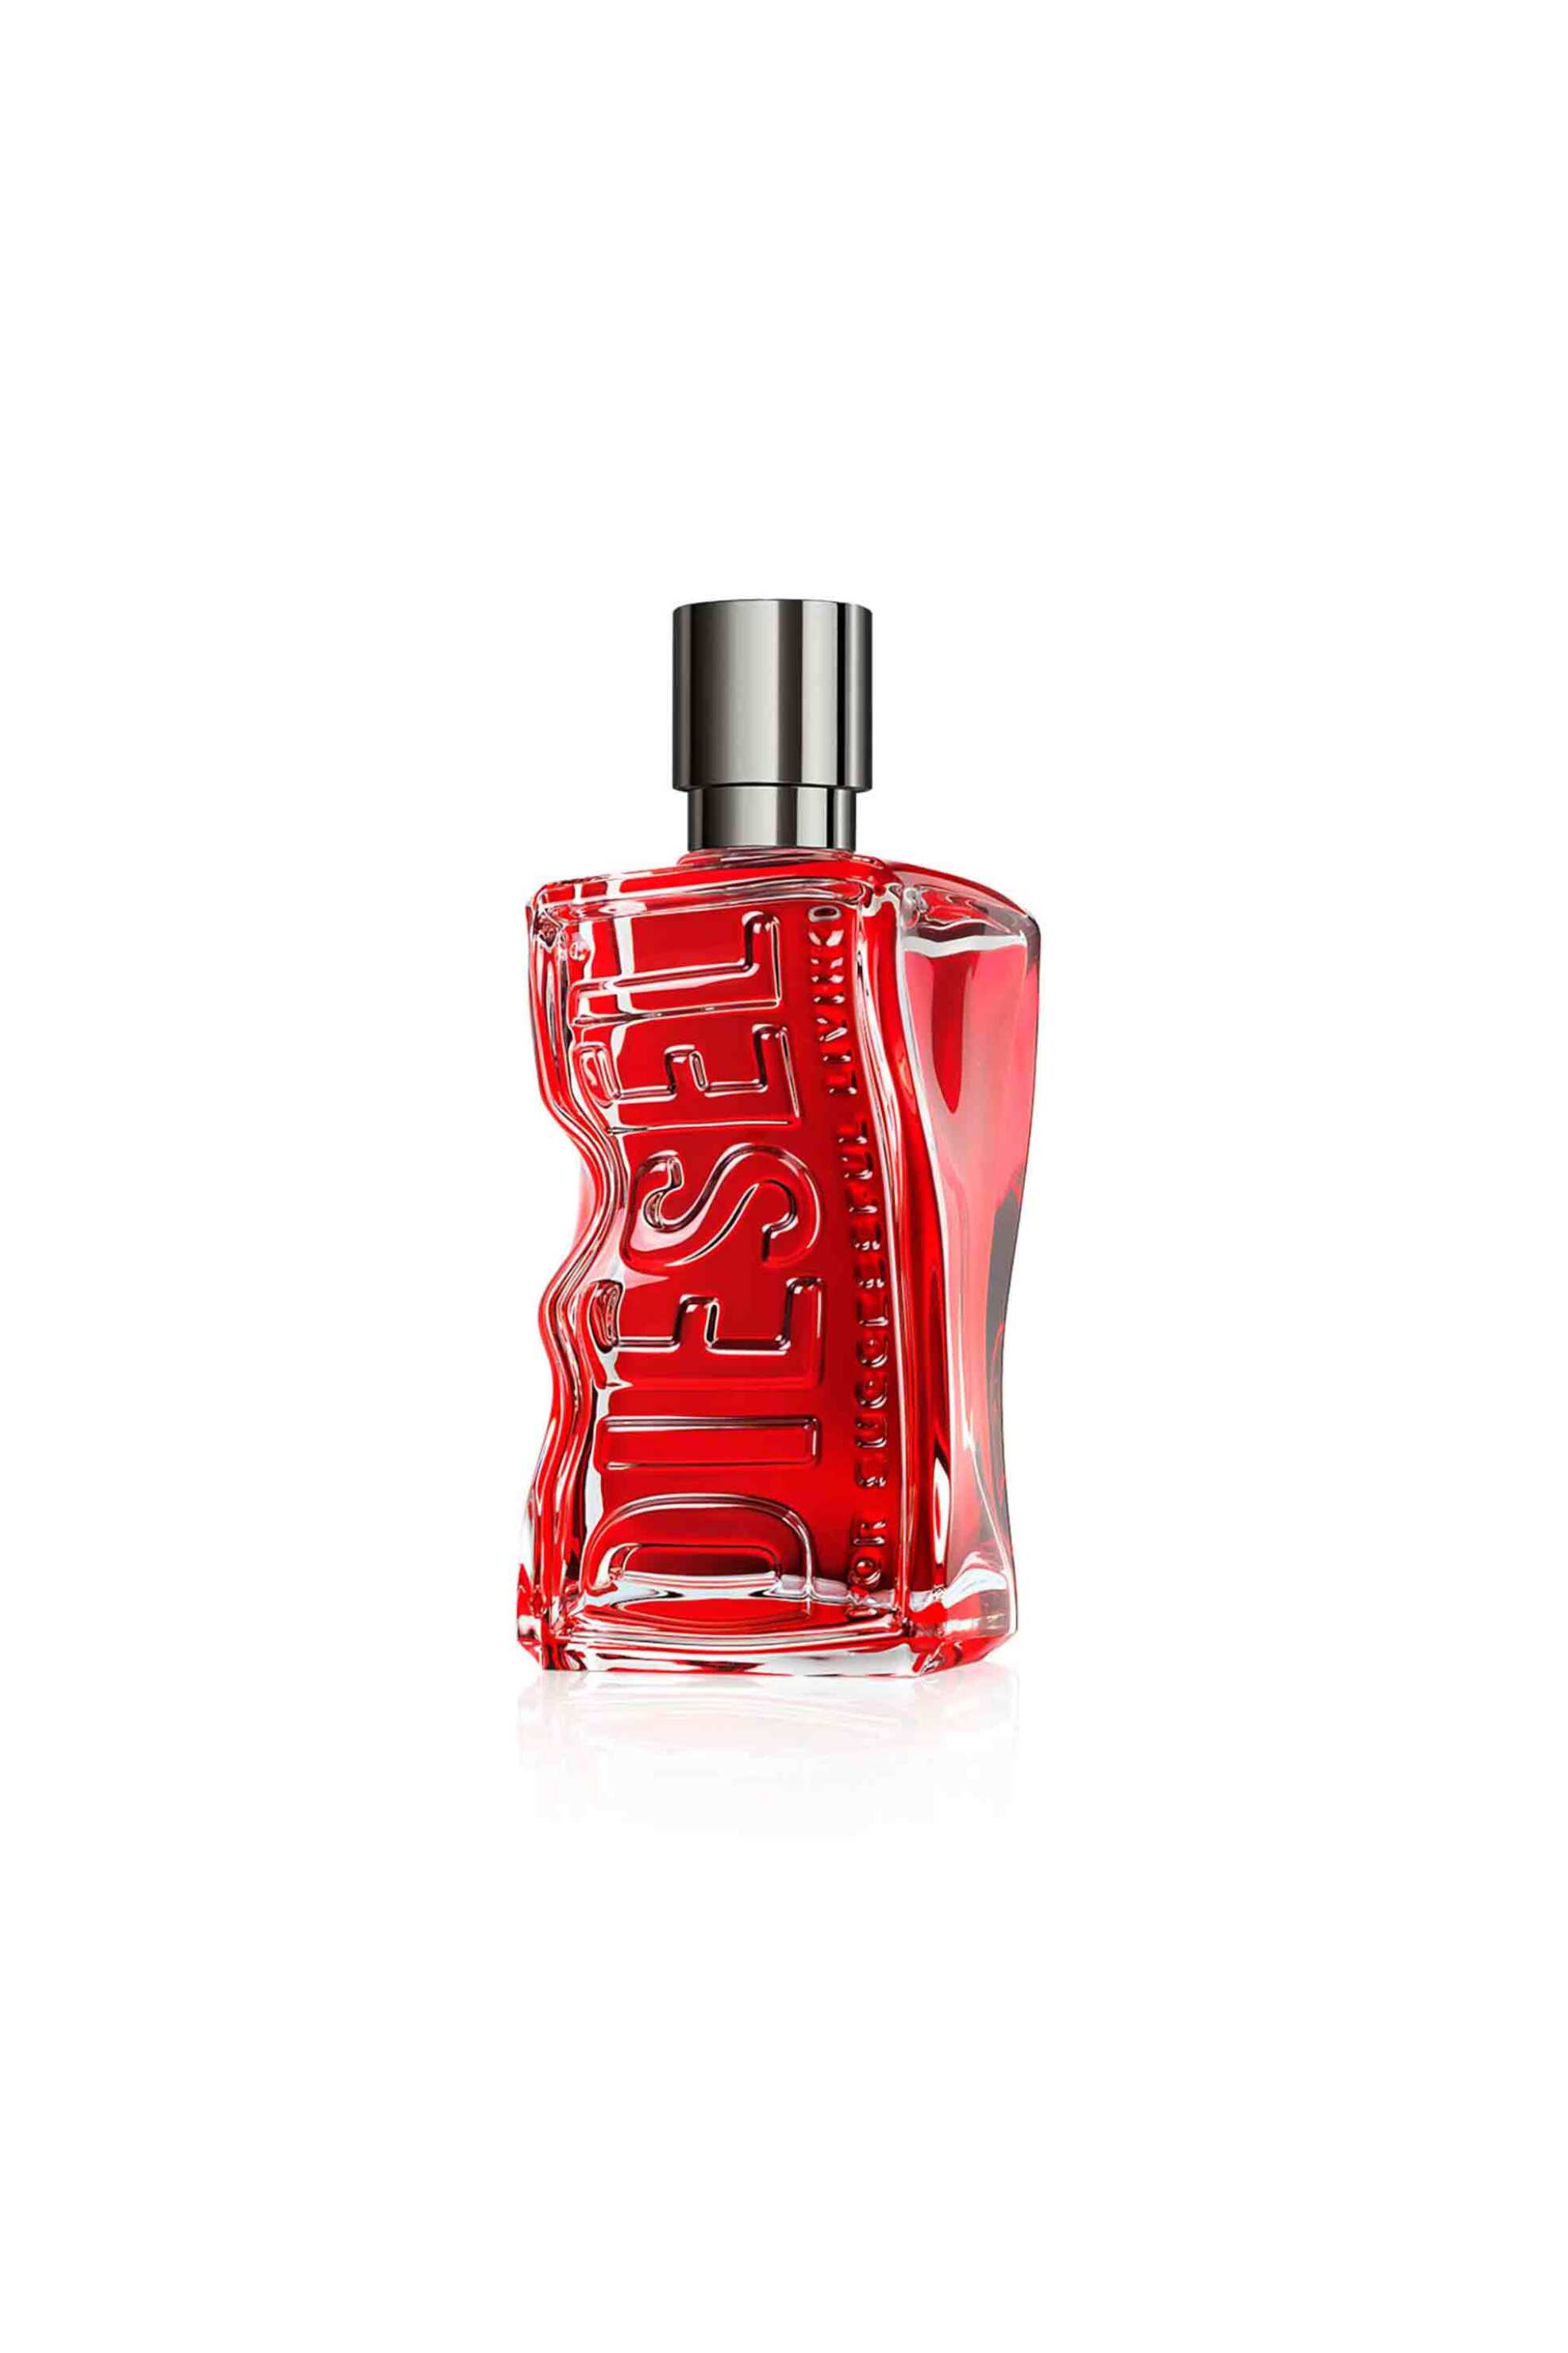 Ομορφιά > ΑΡΩΜΑΤΑ > Ανδρικά Αρώματα > Eau de Parfum - Parfum Diesel D Red Eau de Parfum